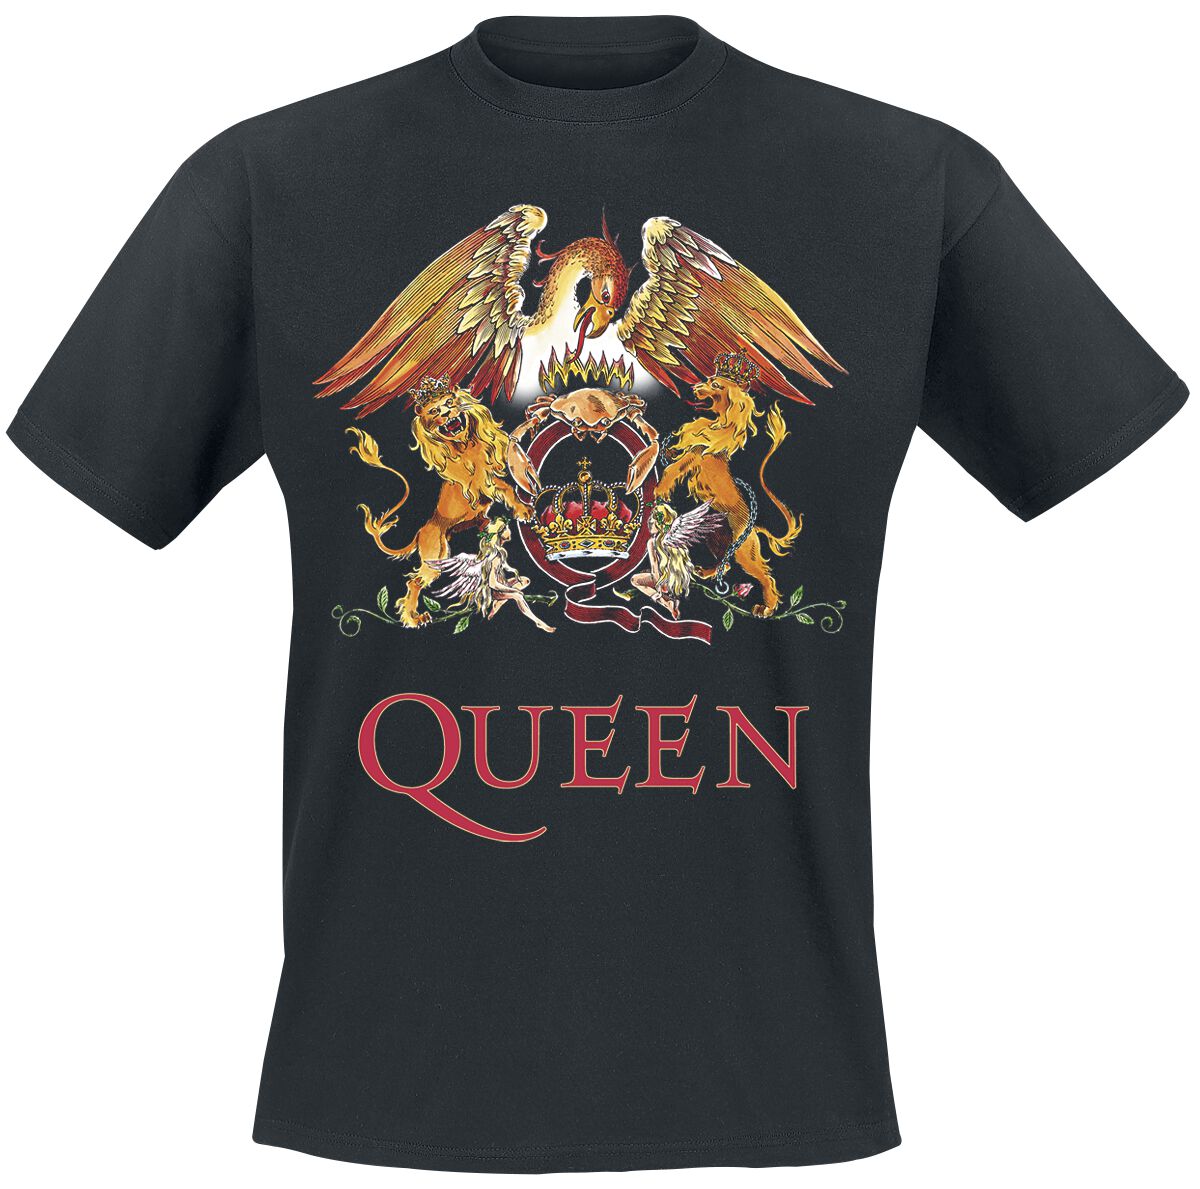 Queen T-Shirt - Crest Vintage - S bis 5XL - für Männer - Größe 4XL - schwarz  - Lizenziertes Merchandise!